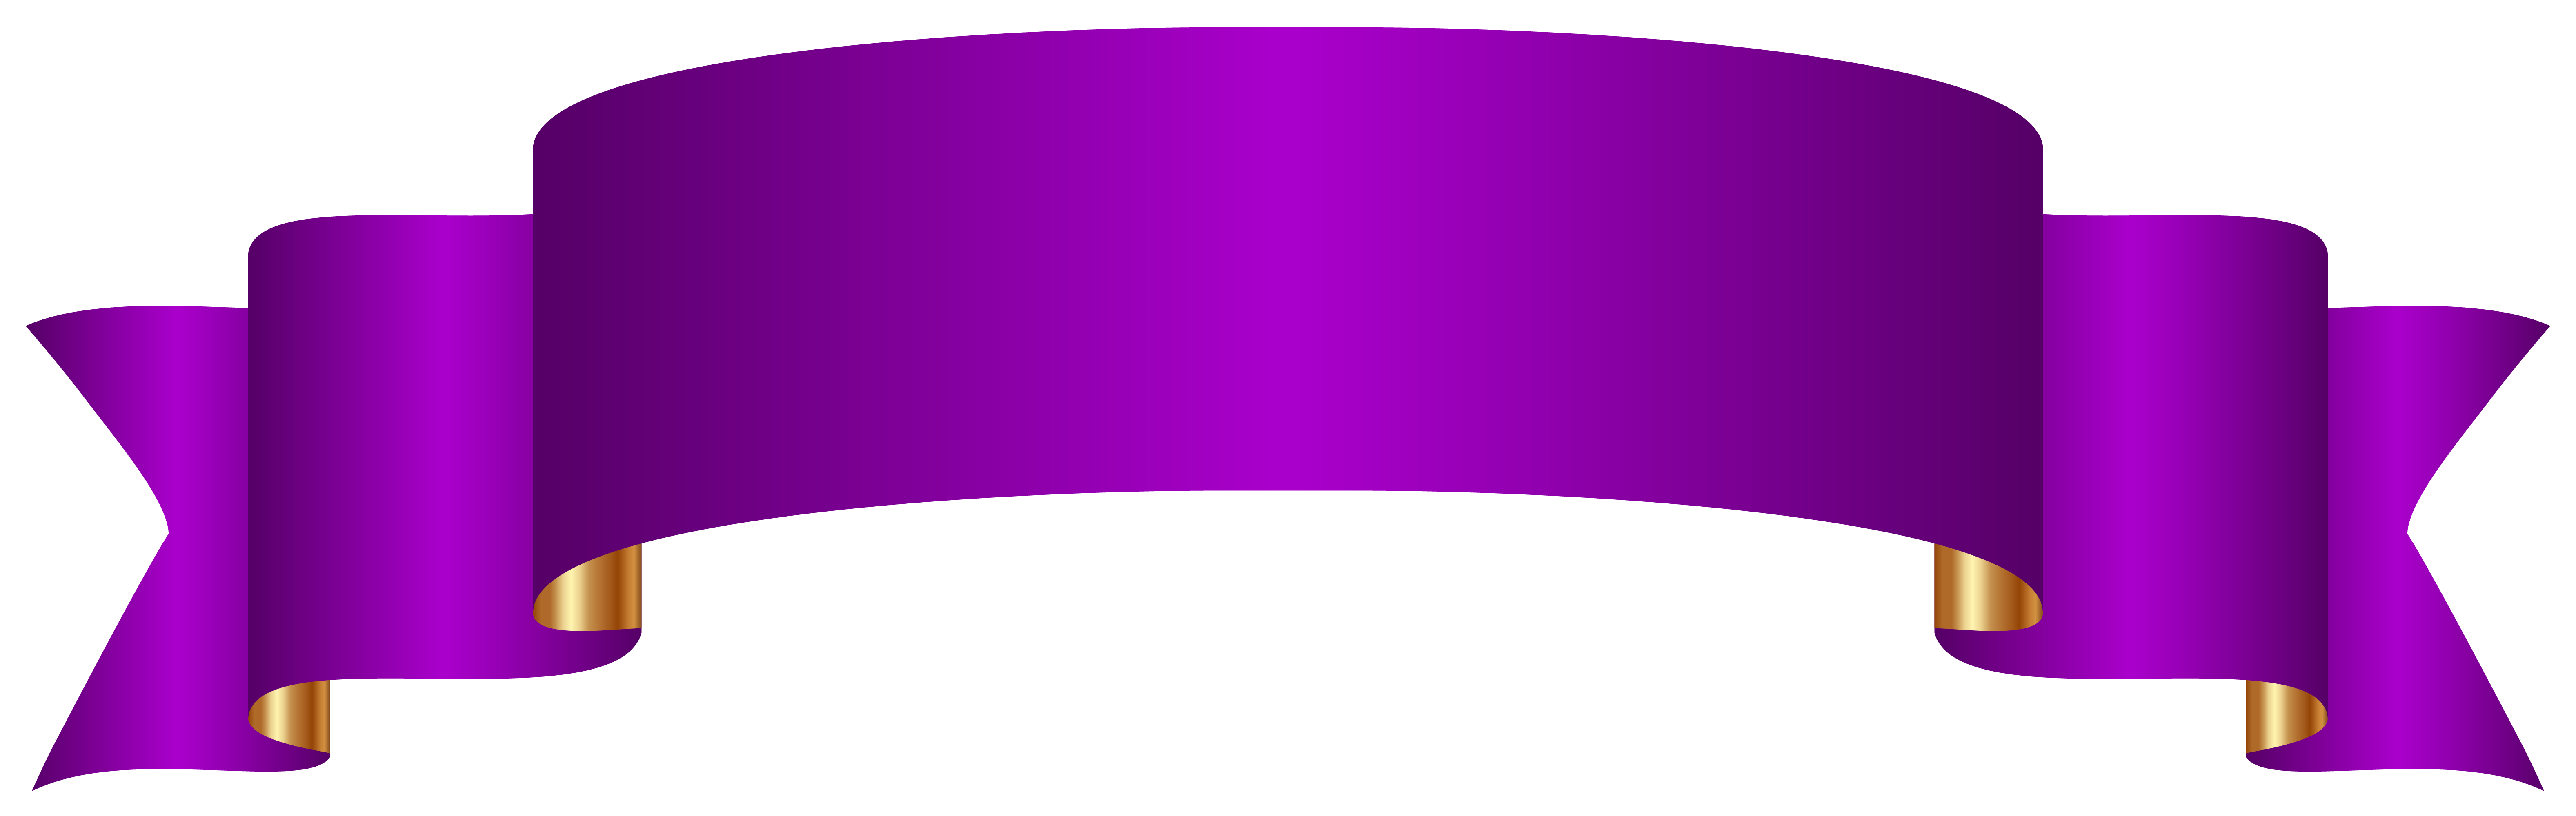 Фиолетовый баннер PNG картина